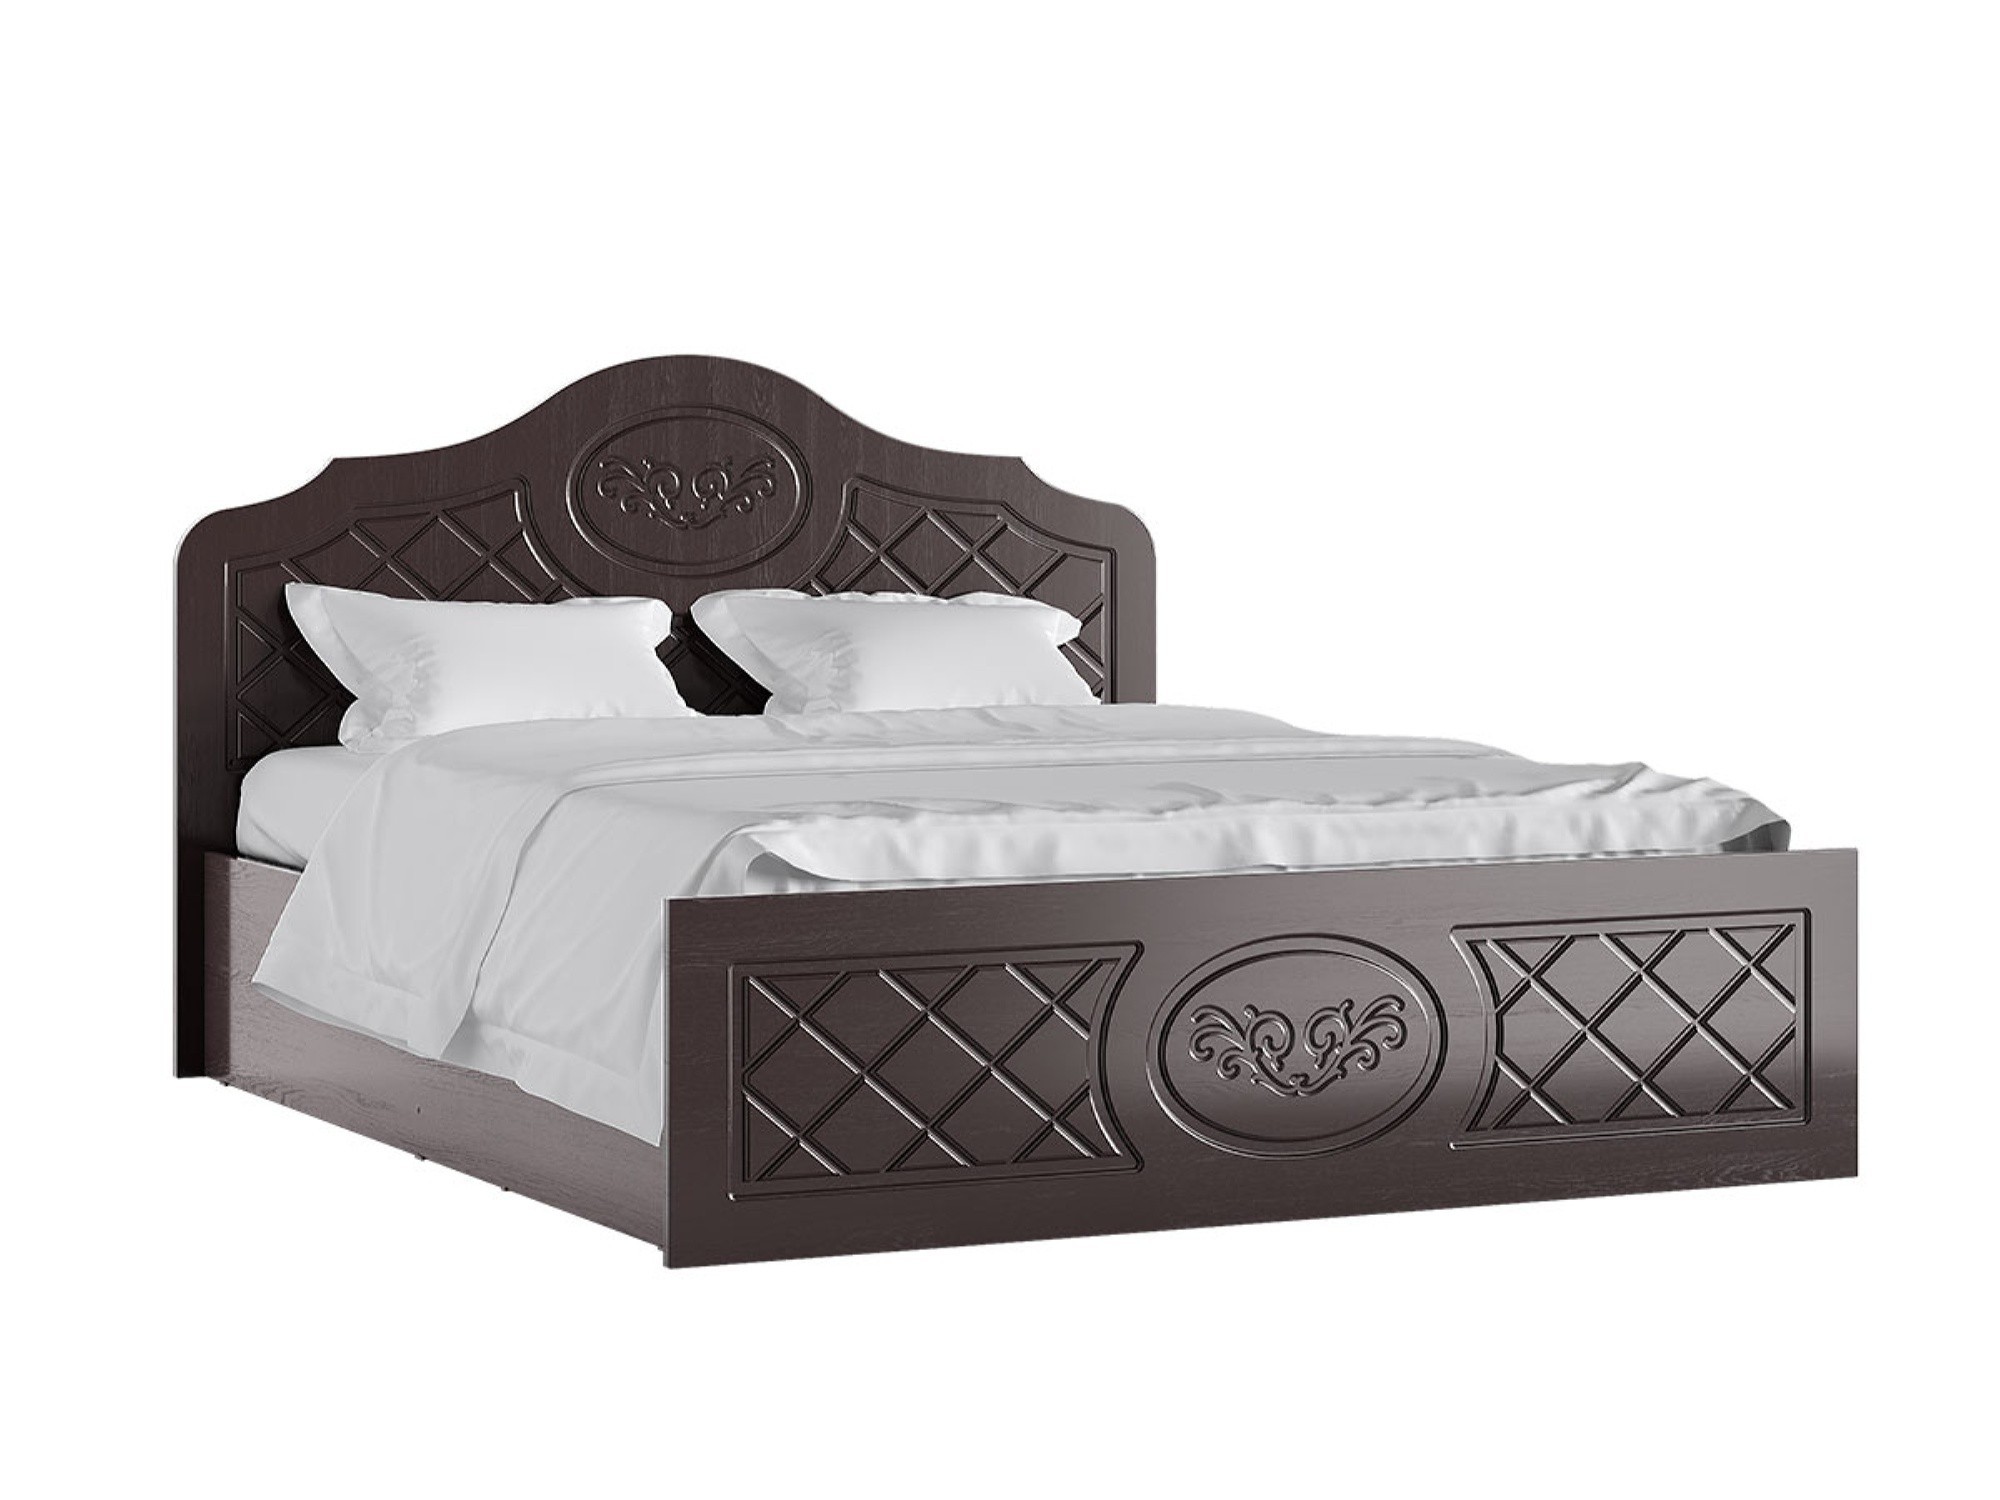 Престиж Кровать 140 (Венге шоколад) Венге шоколад, МДФ, ЛДСП престиж кровать 140 венге шоколад